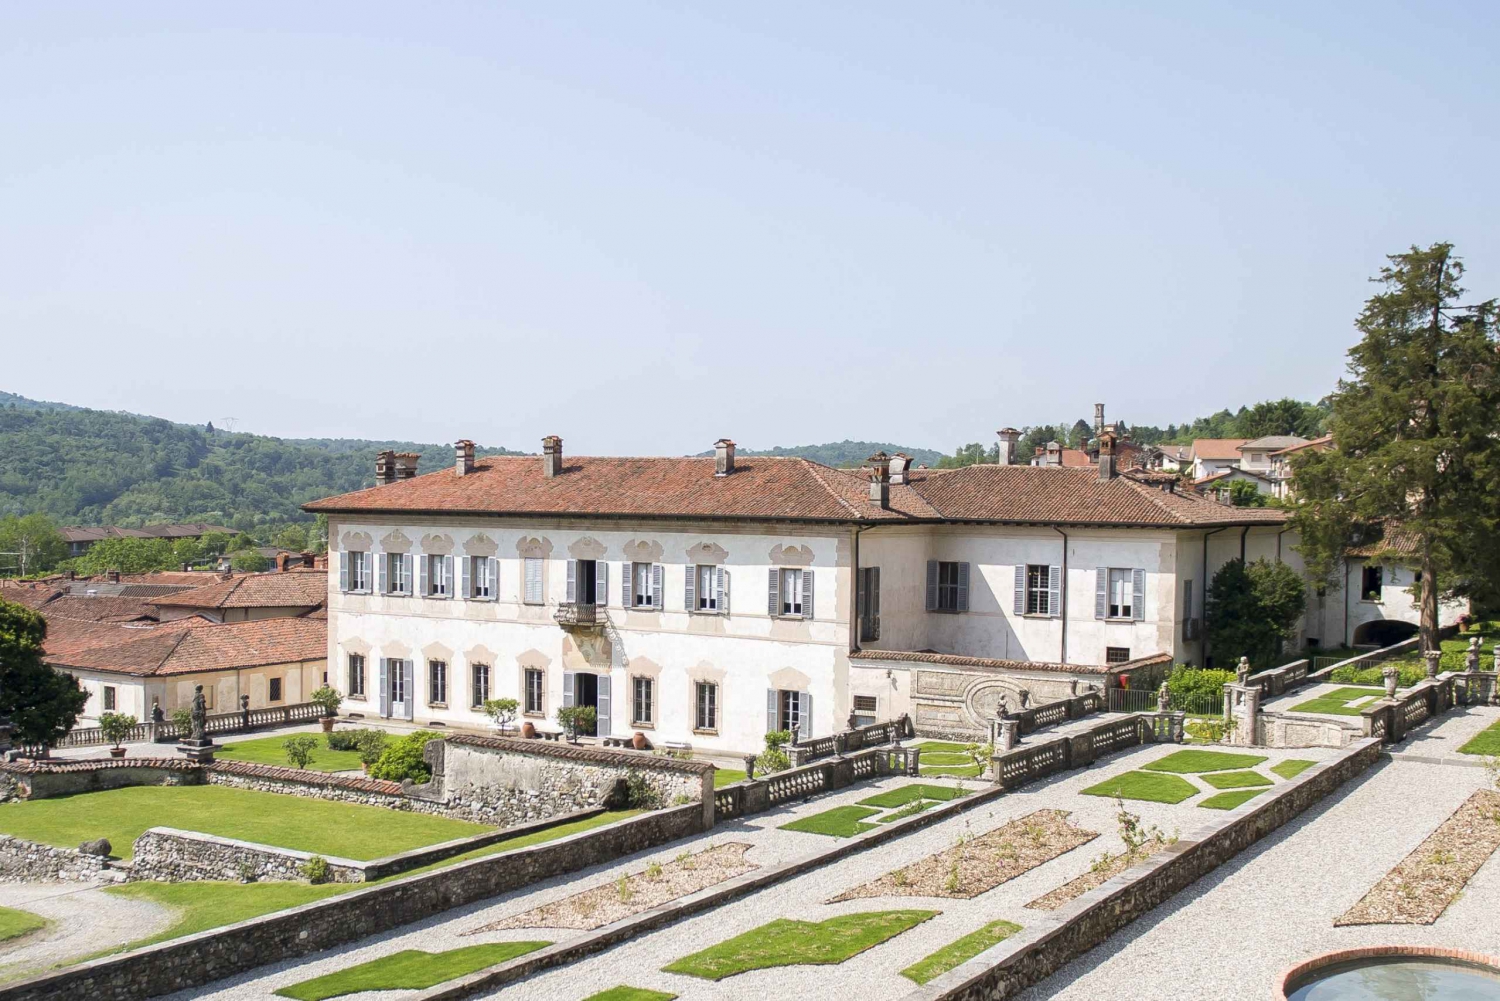 Casalzuigno: Villa della Porta Bozzolo